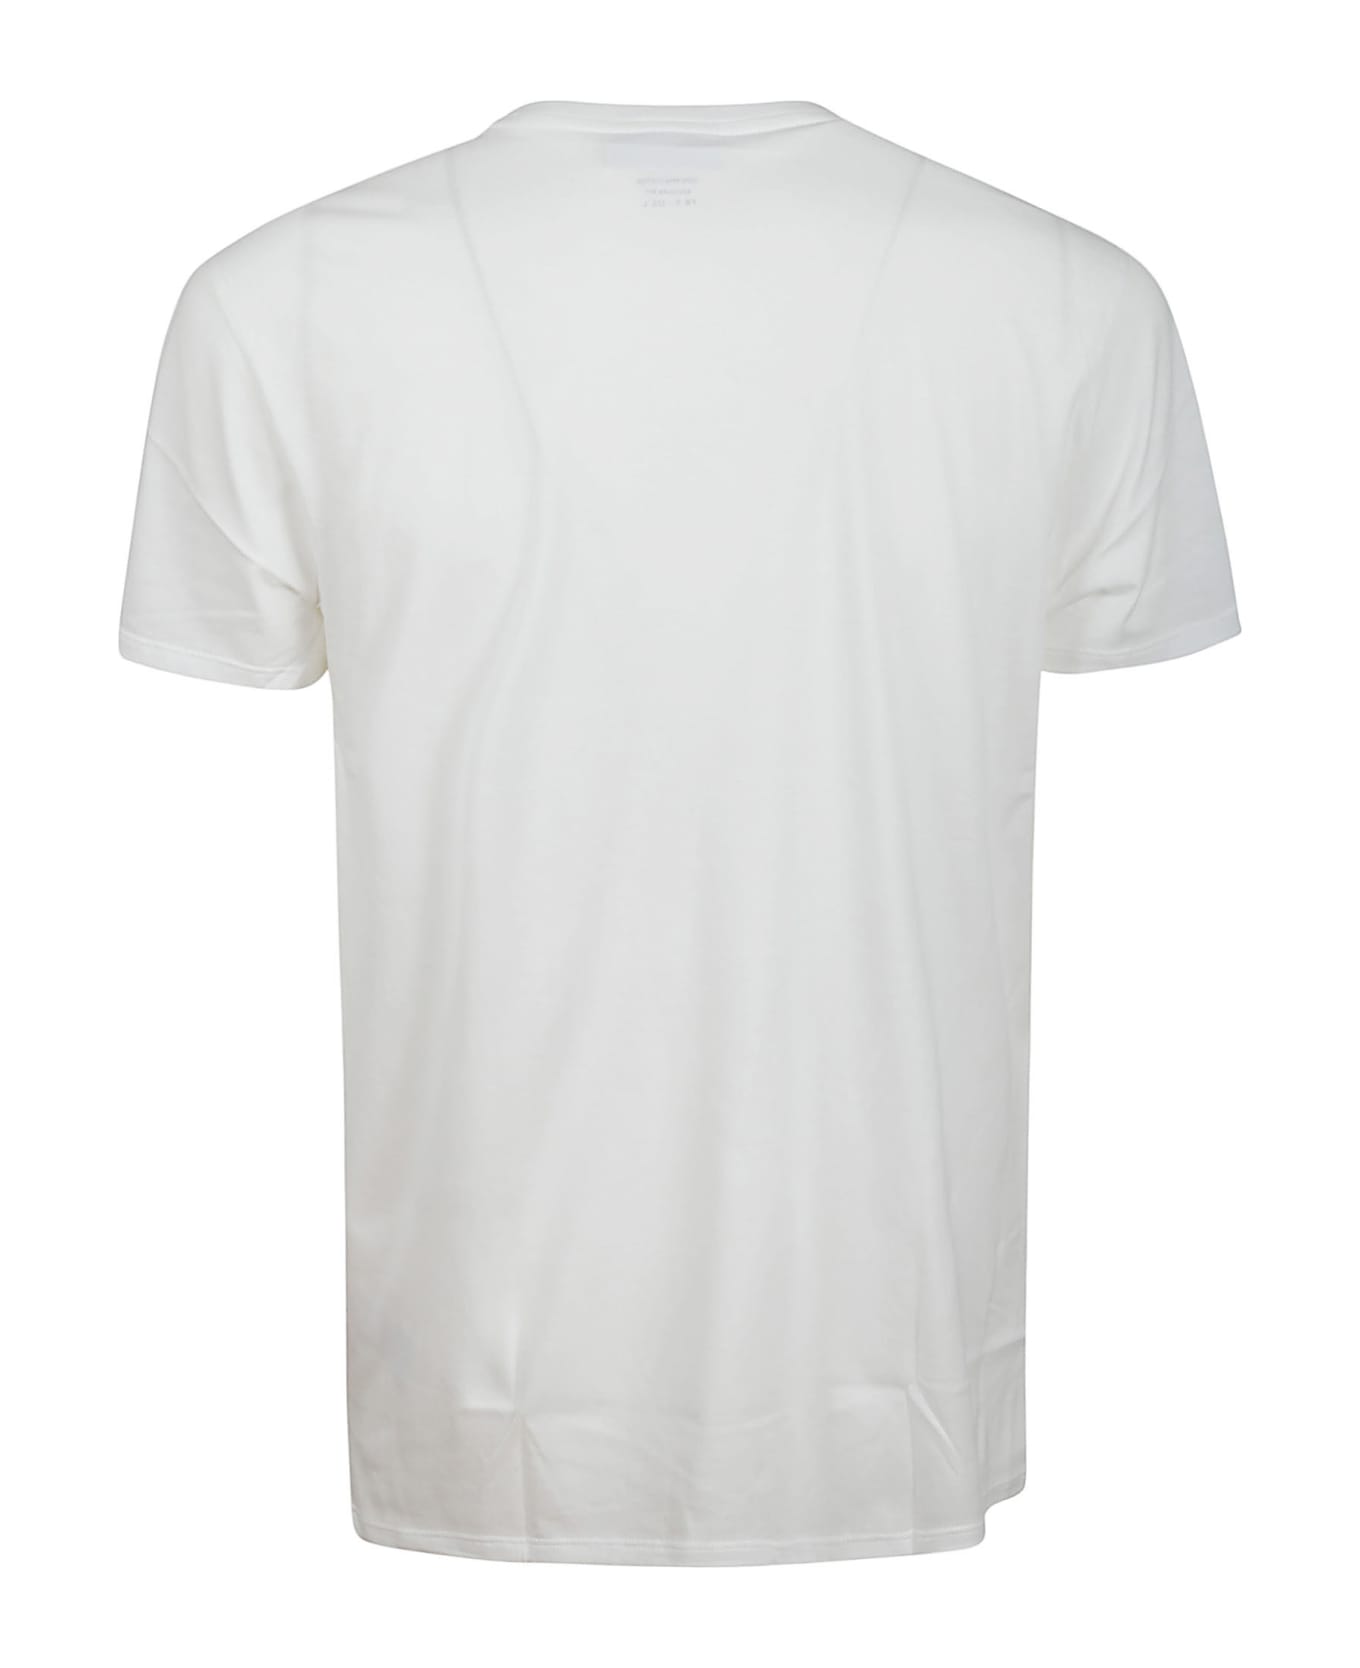 Lacoste Tshirt - White